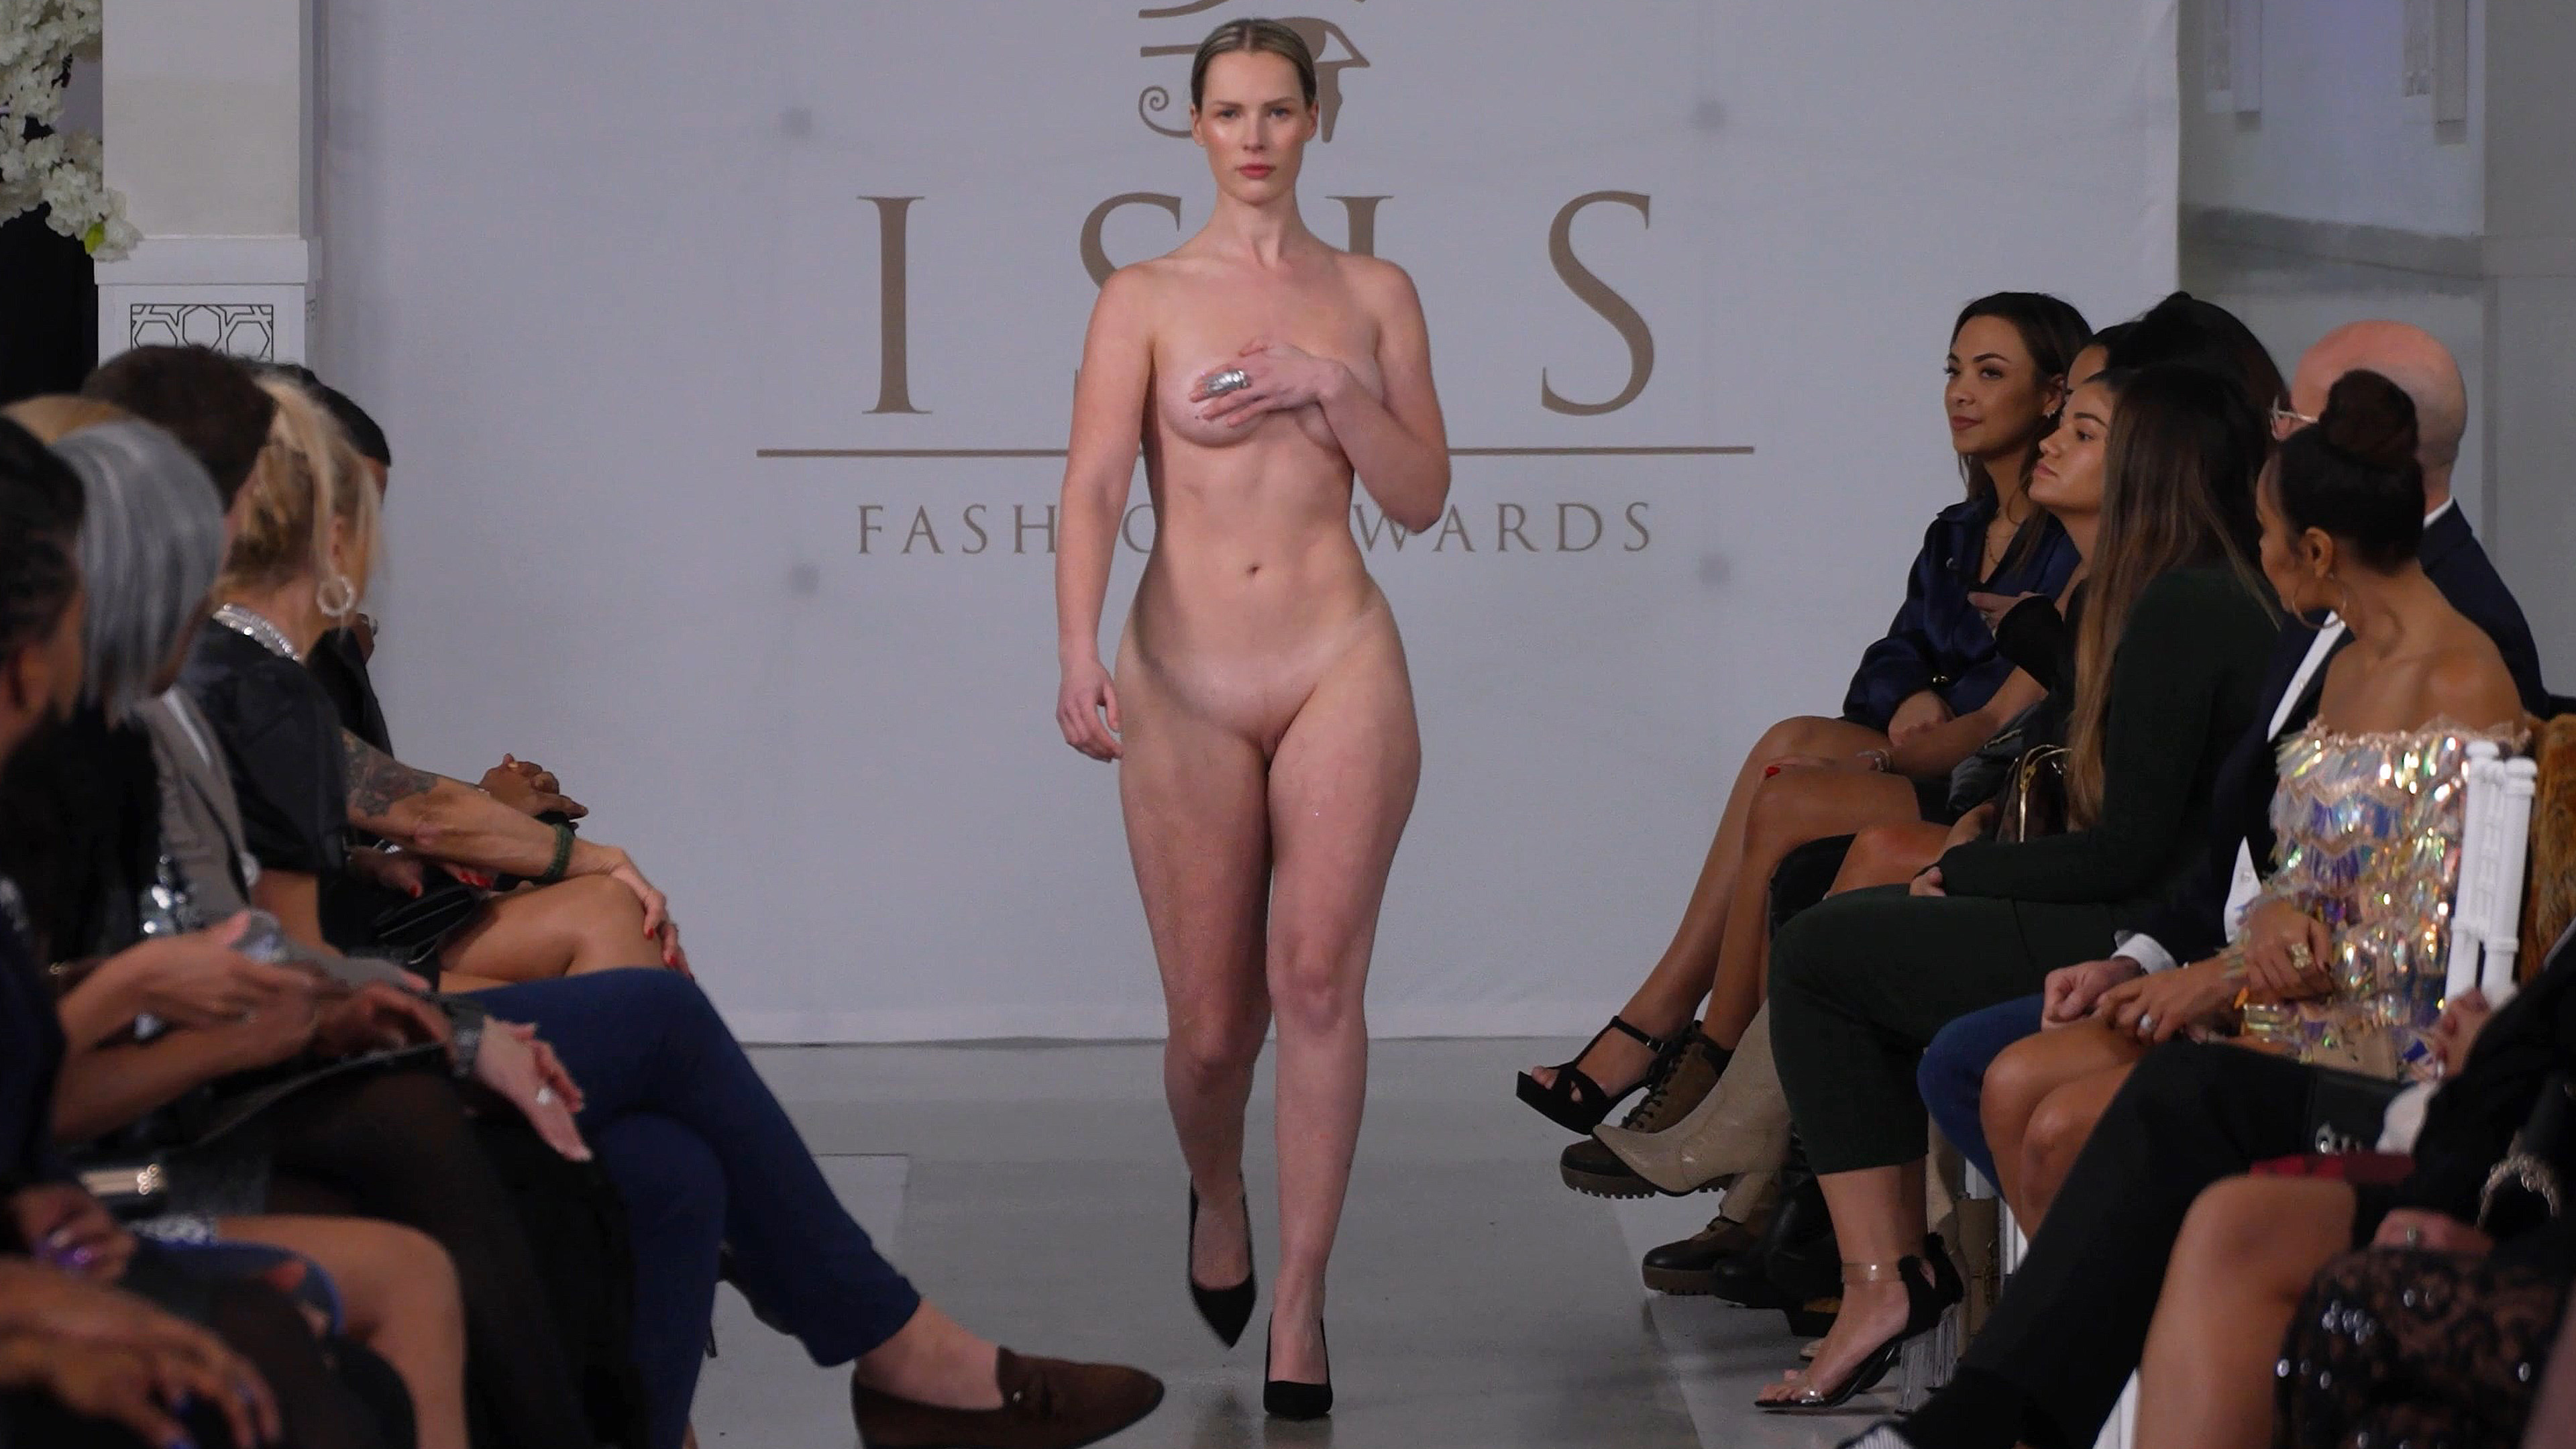 Full nude fashion show